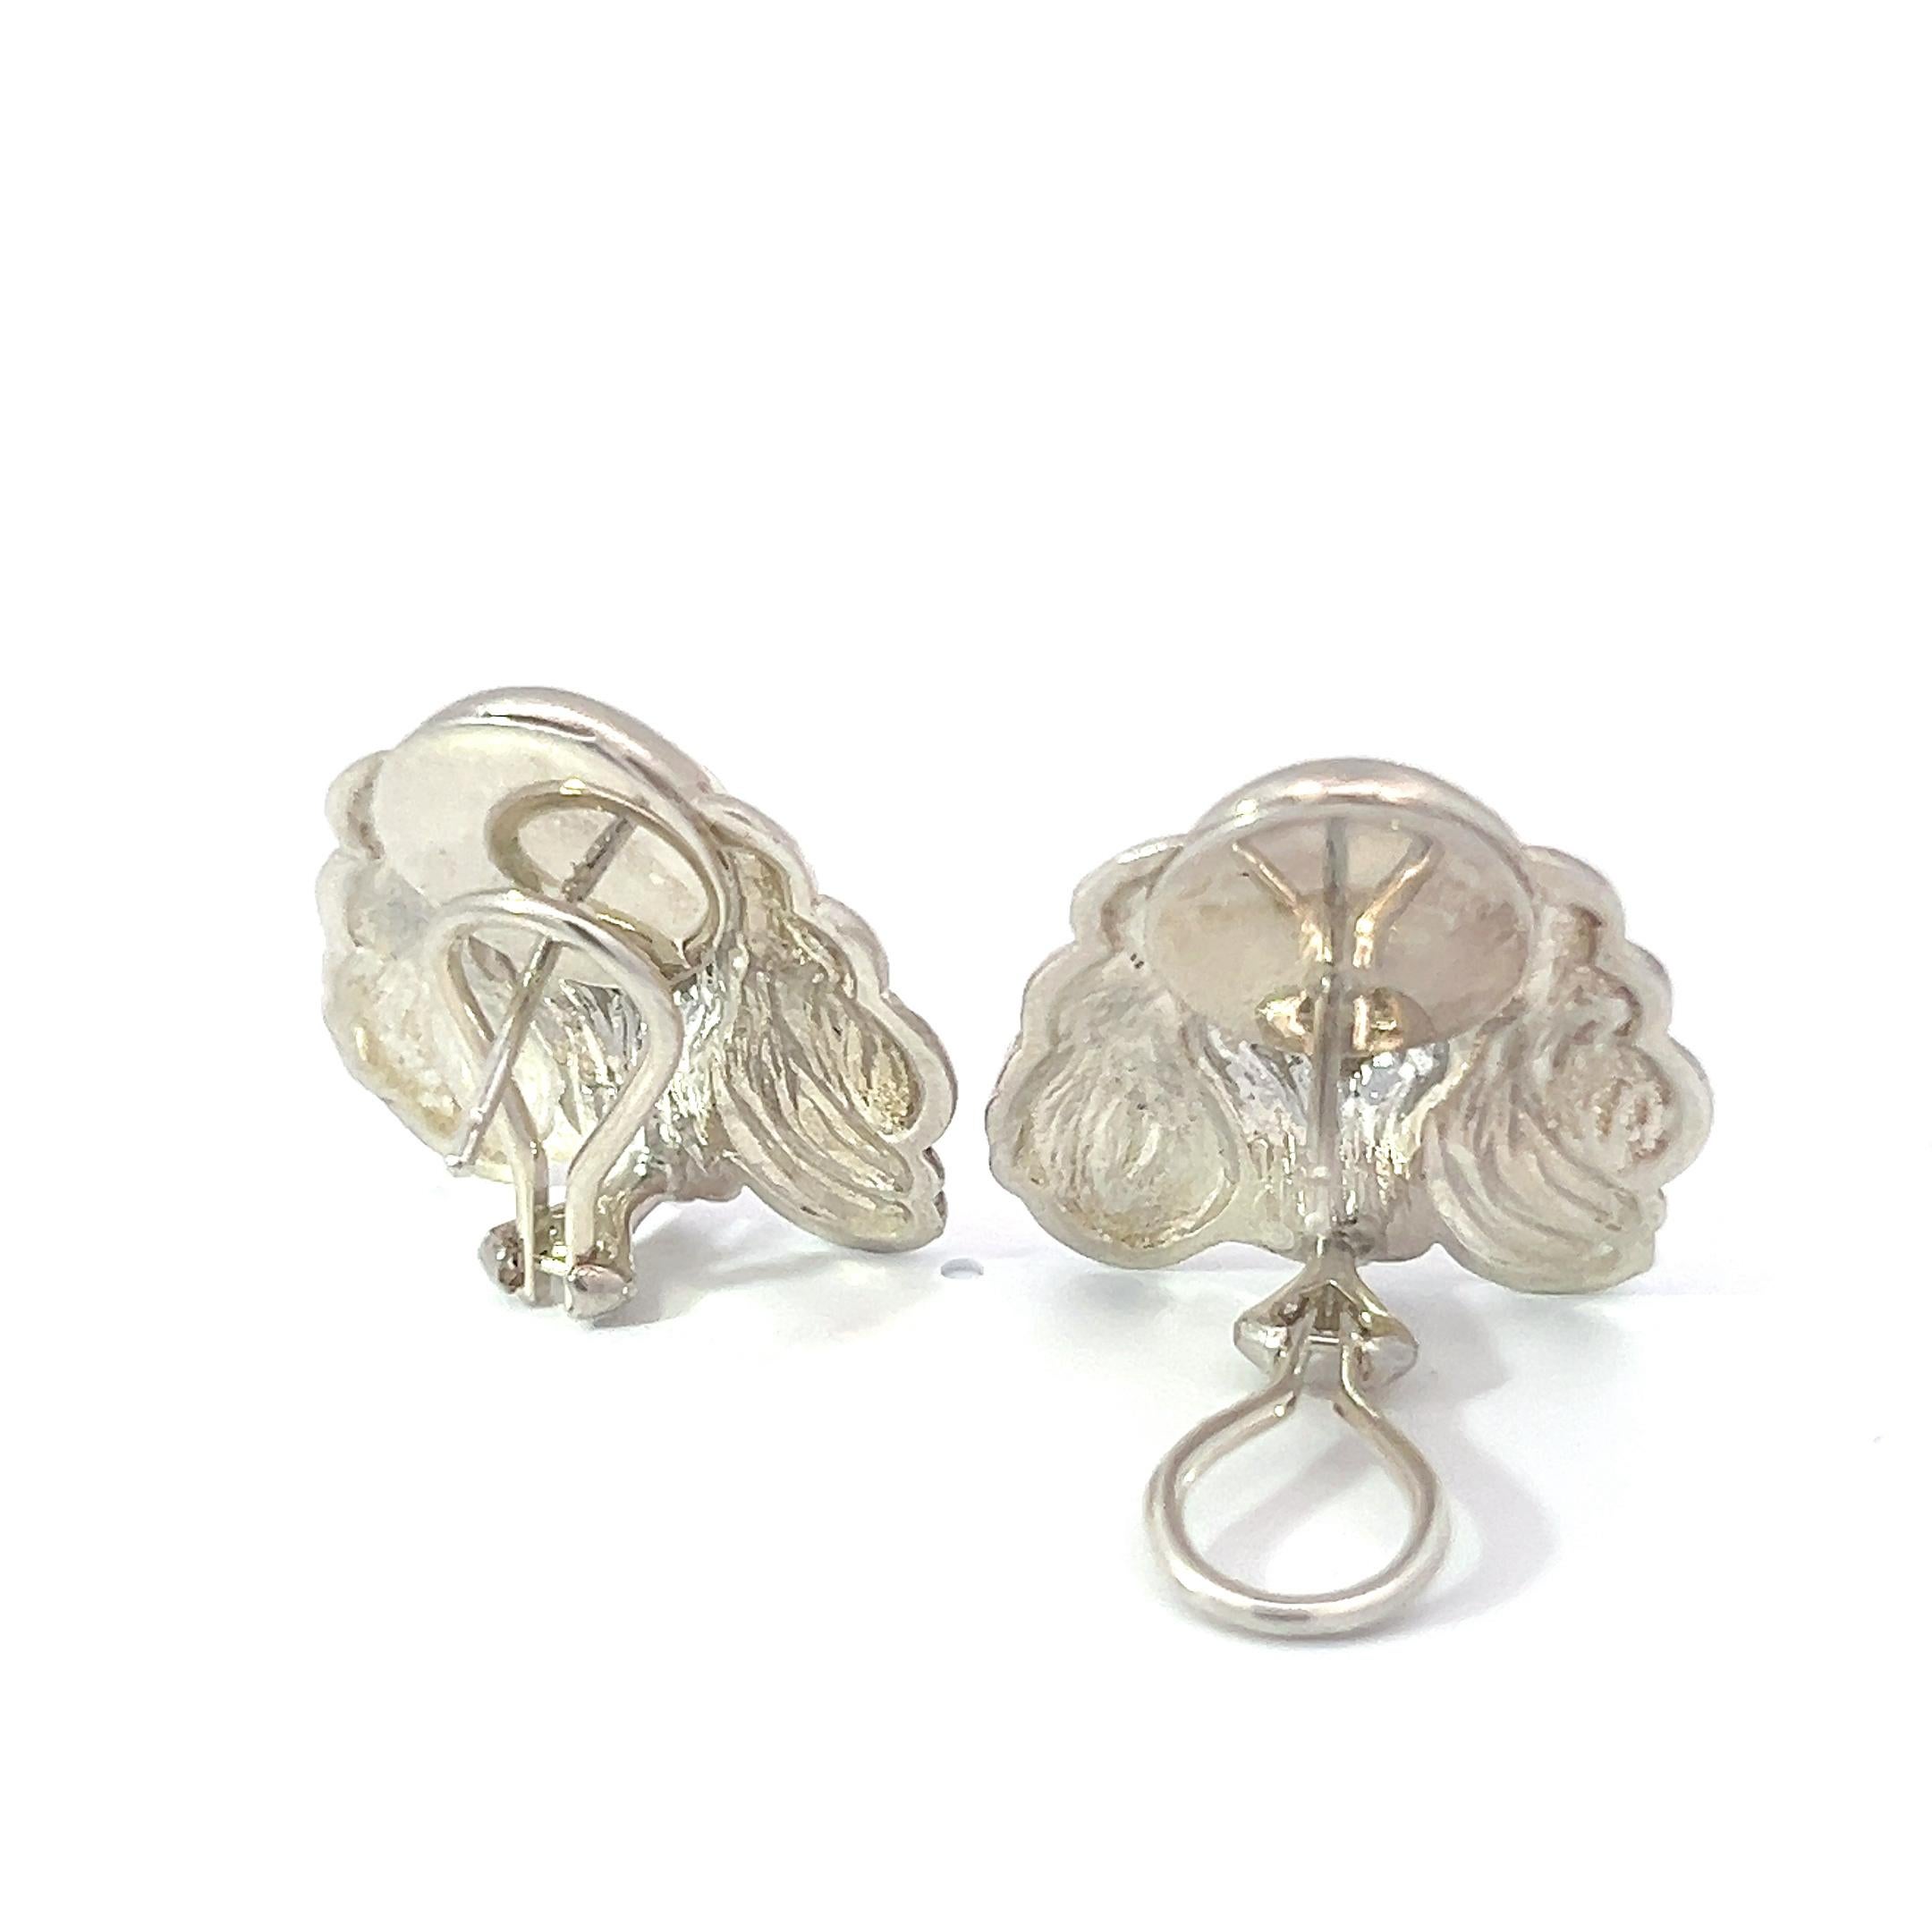 Verleihen Sie Ihrem Stil skurrilen Charme mit unseren Cocker Spaniel-Hundeohrringen aus Sterling-Silber, einem reizvollen Ausdruck verspielter Eleganz. Diese mit Präzision gefertigten Ohrringe mit liebenswerten Pudelhund-Motiven aus glänzendem